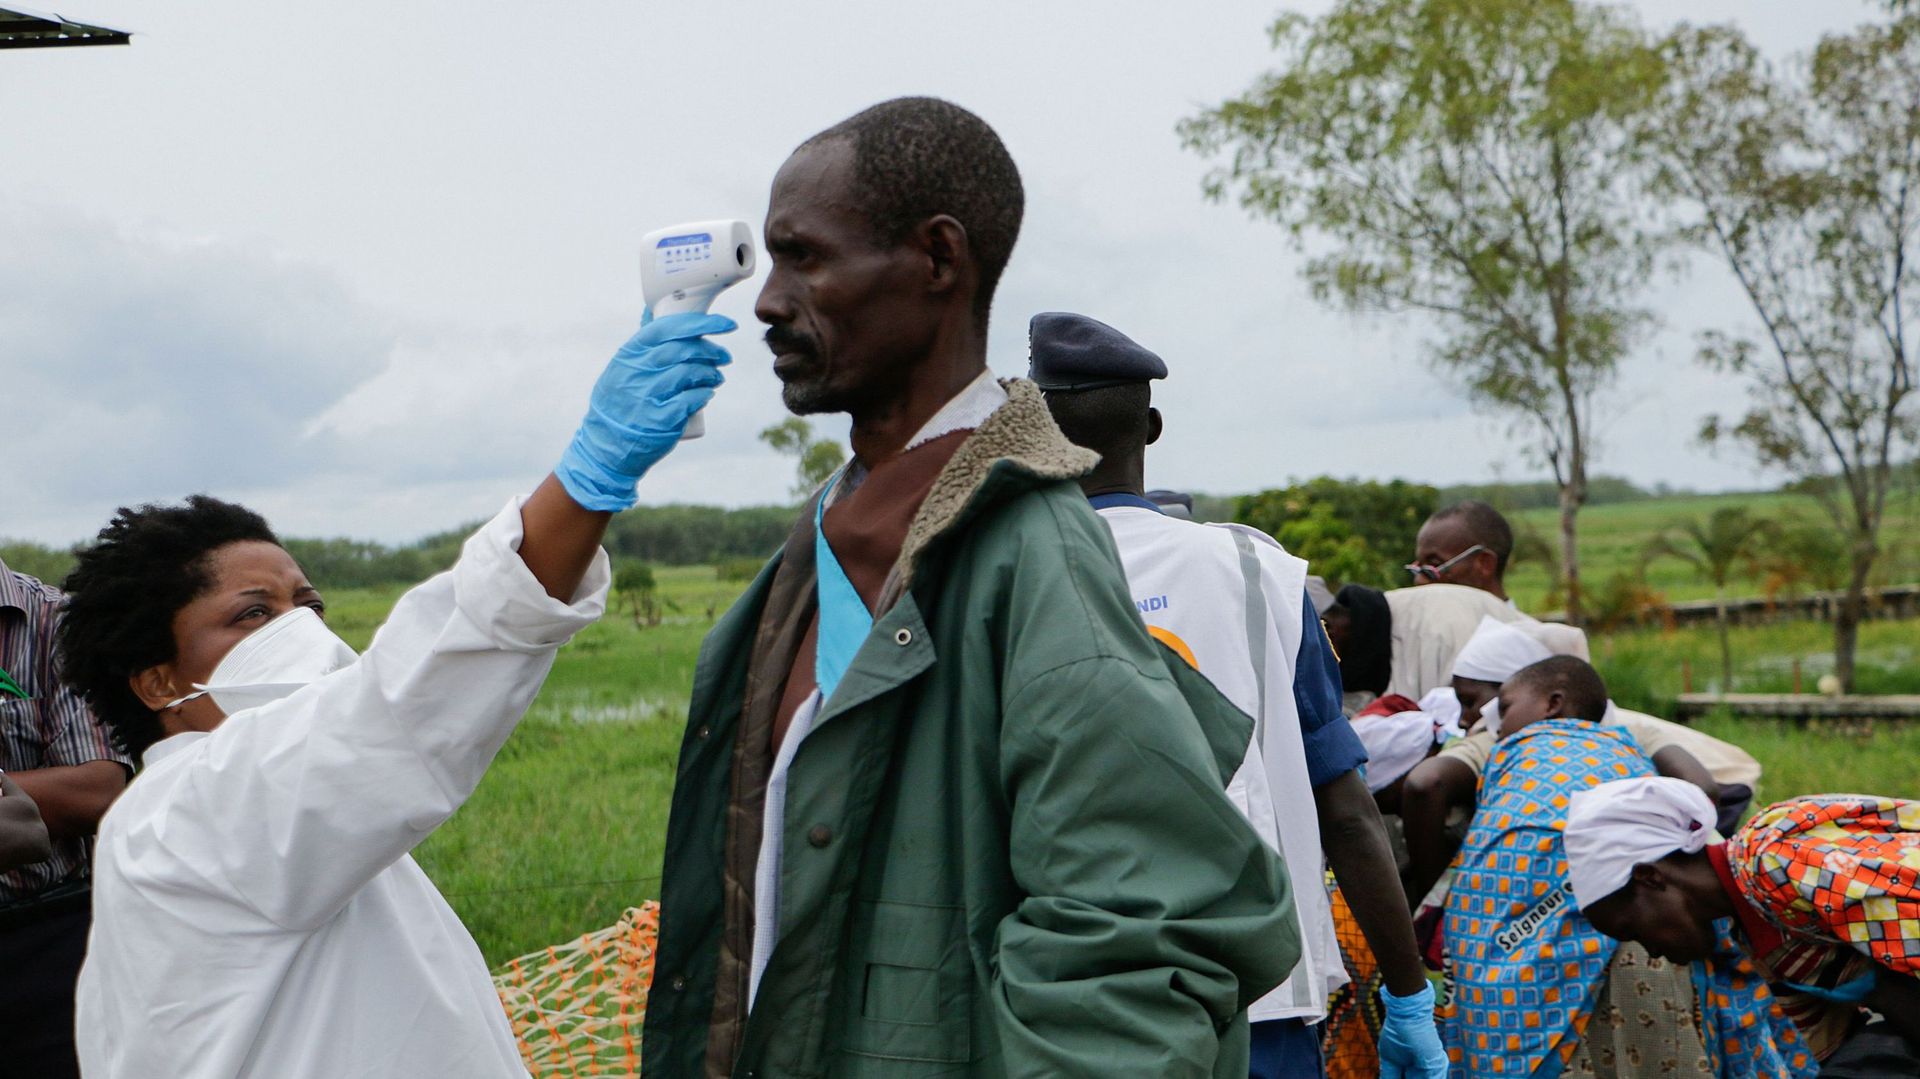 Un membre du personnel médical mesure la température d'un homme à titre préventif contre le coronavirus COVID-19 à son arrivée de rapatriement à Gatumba, à la frontière avec la République démocratique du Congo (RDC), au Burundi, le 18 mars 2020. 